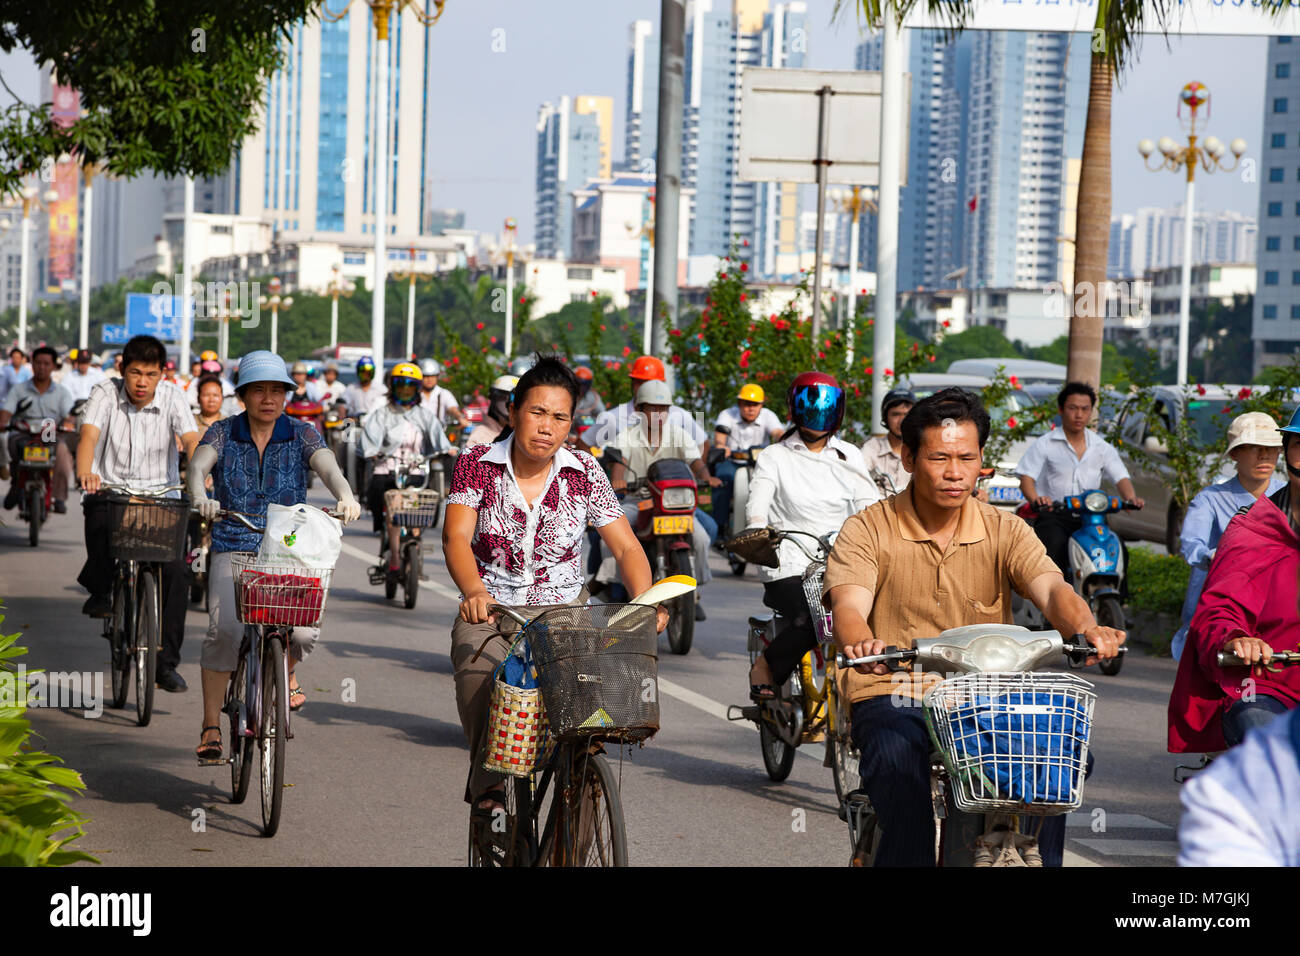 Gente que viaje, temprano en la mañana en bicicletas y scooters en un carril separado en la ciudad de Nanning, Guangxi, en el sur oeste de China. Foto de stock